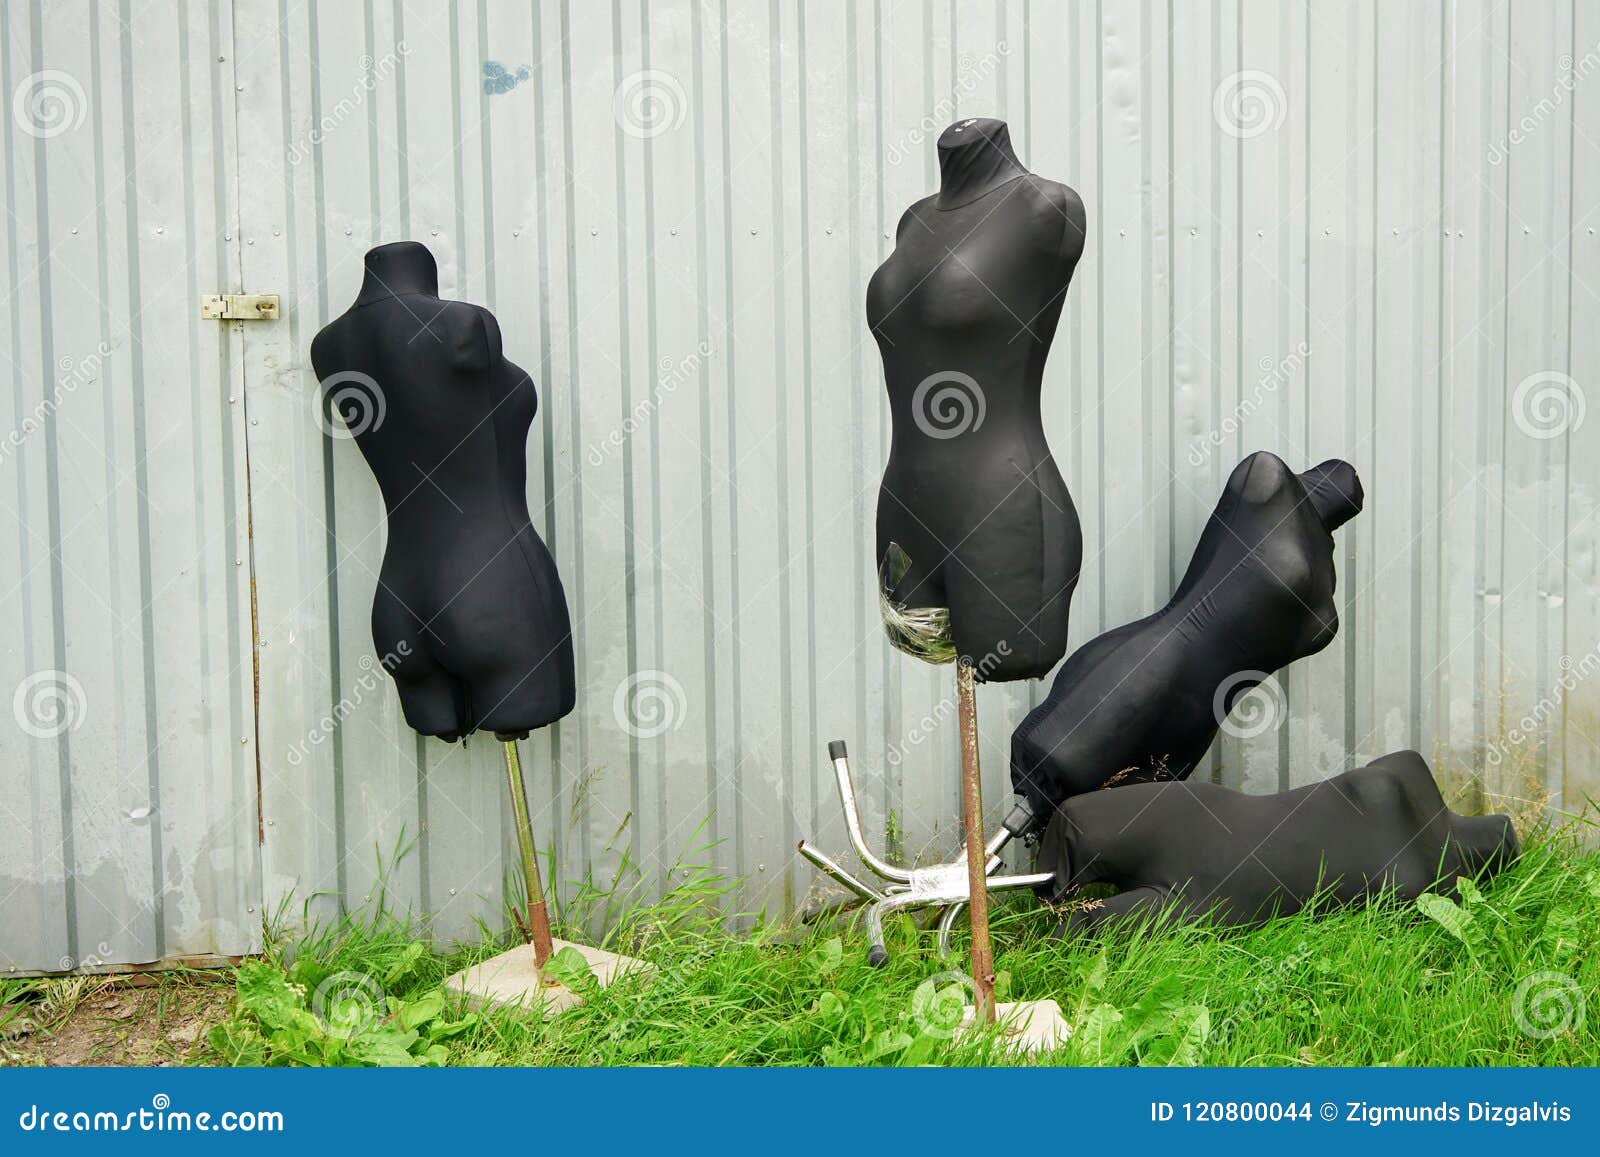 Figure Usate Inutili Del Manichino Fotografia Stock - Immagine di vestiti,  bambola: 120800044